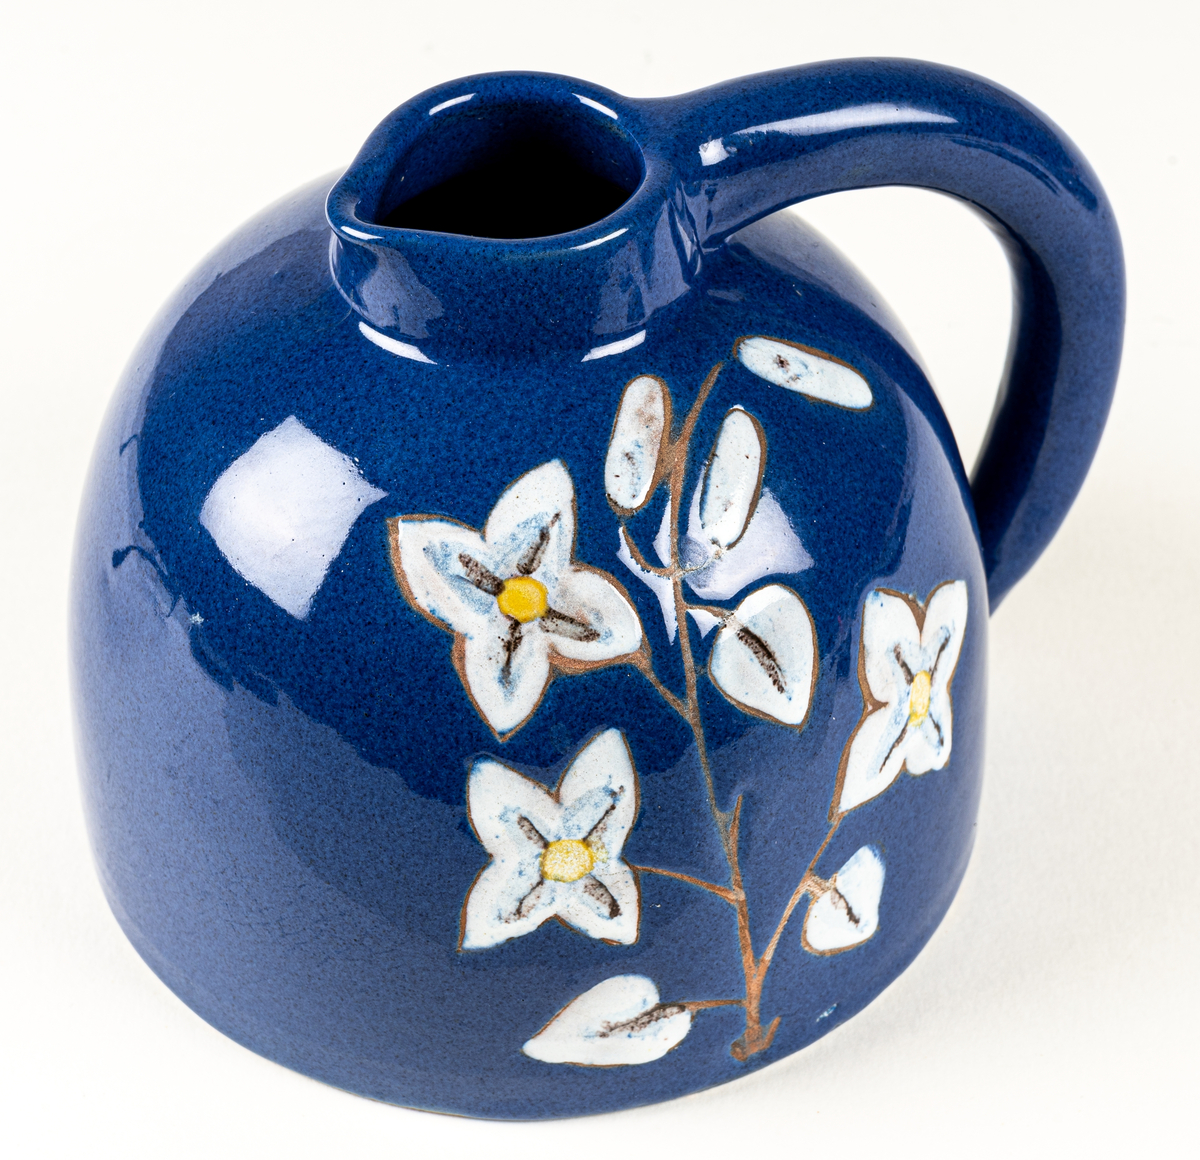 Kanna eller blomkrus i lergods, formgivet av skulptör Maggie Wibom vid hennes företag Stockholms Keramik AB, 1940-talet. Den blå glasyren fick namnet Wibomblå, kannan dekorerad med en kvist vita blommor där kvisten och konturen är oglaserad genom påläggning av vax innan glasyrbränning.